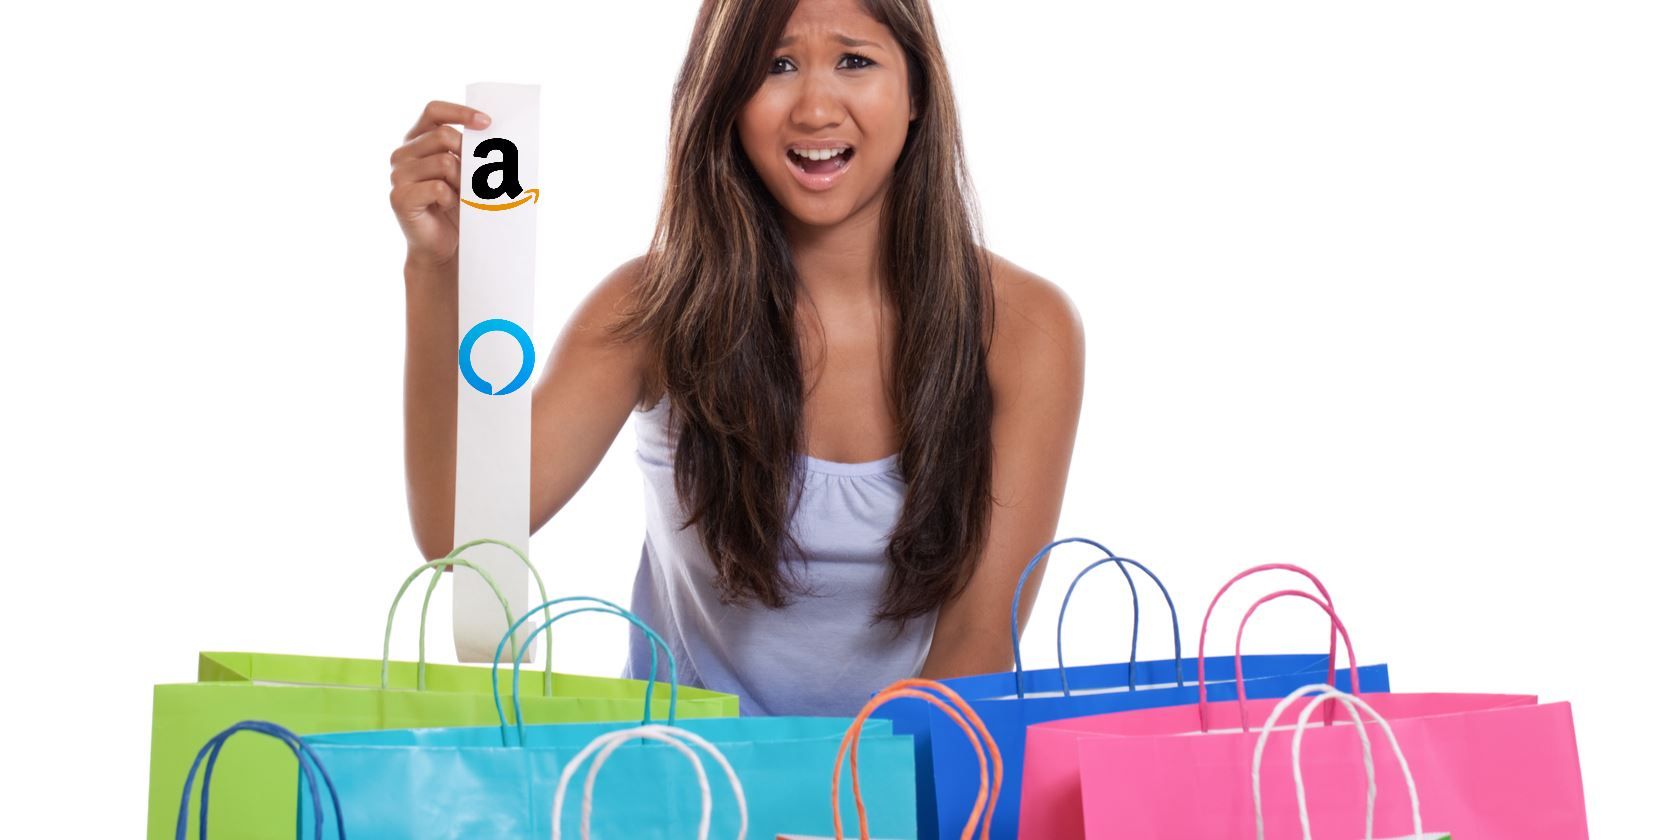 Voice shopping with Alexa on Amazon